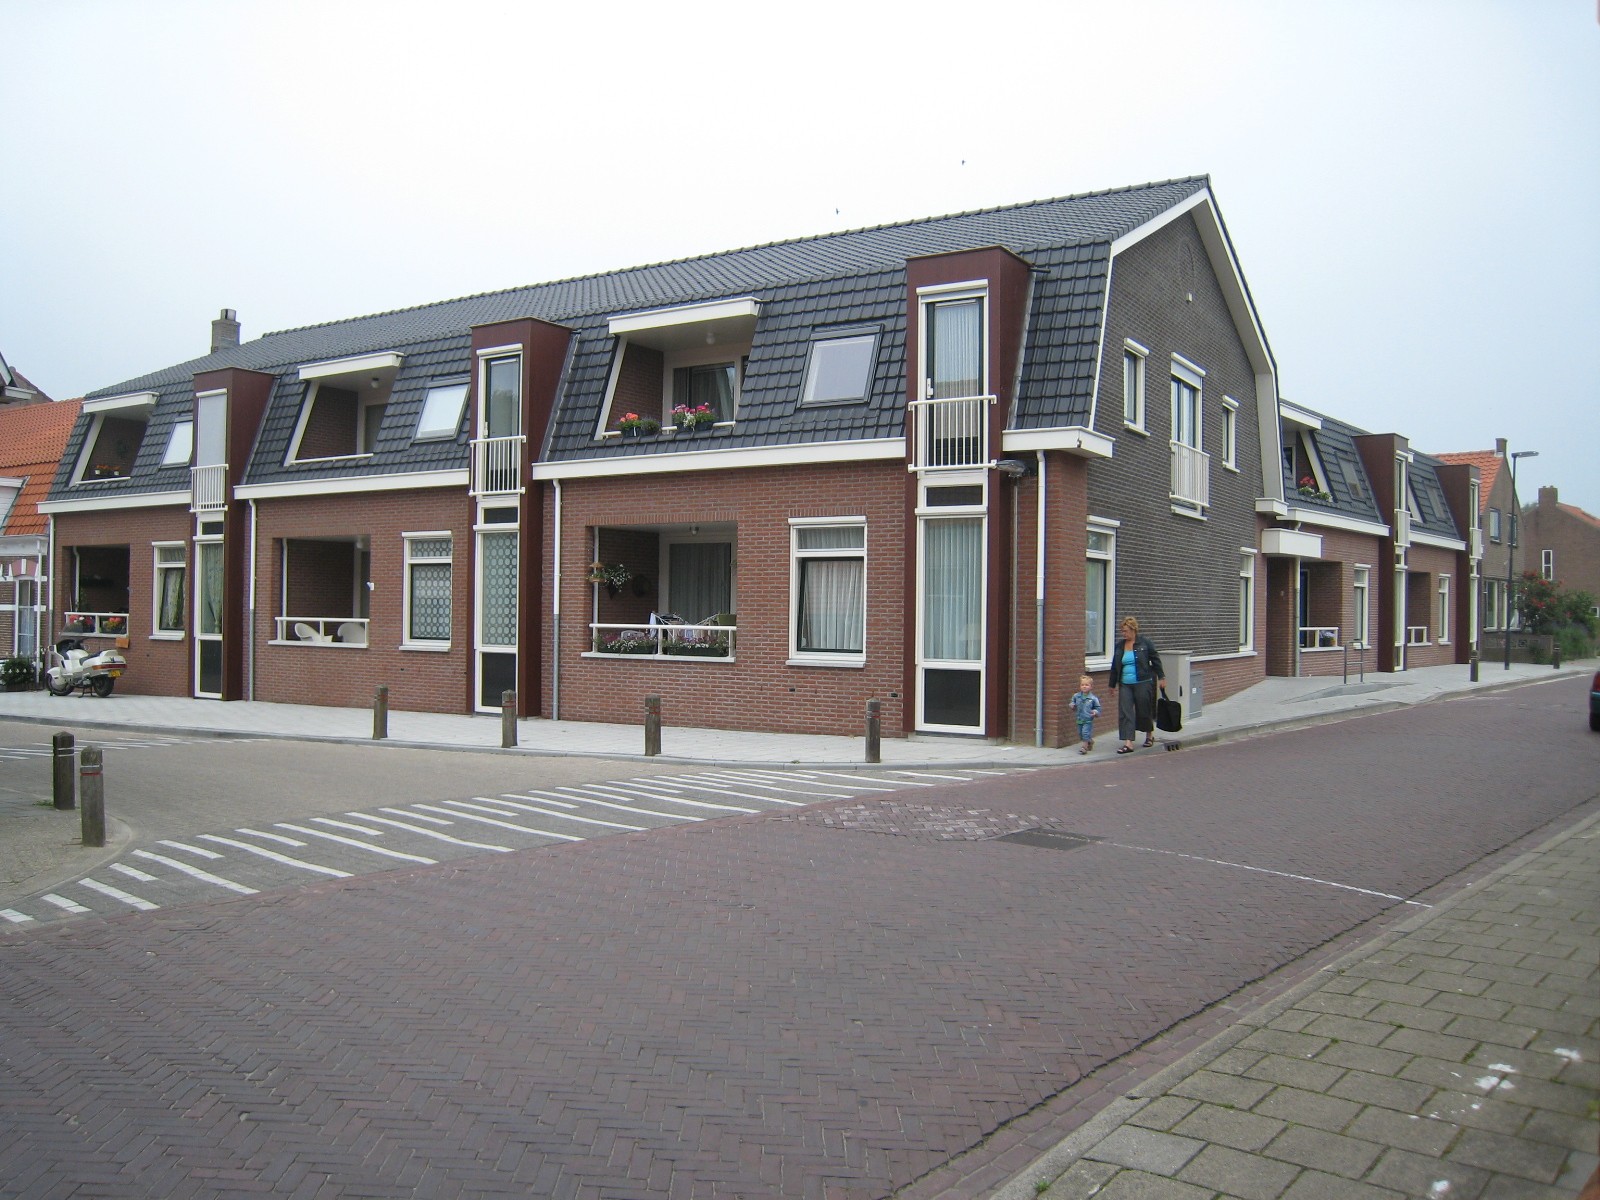 De Kroon 7, 4434 AV Kwadendamme, Nederland